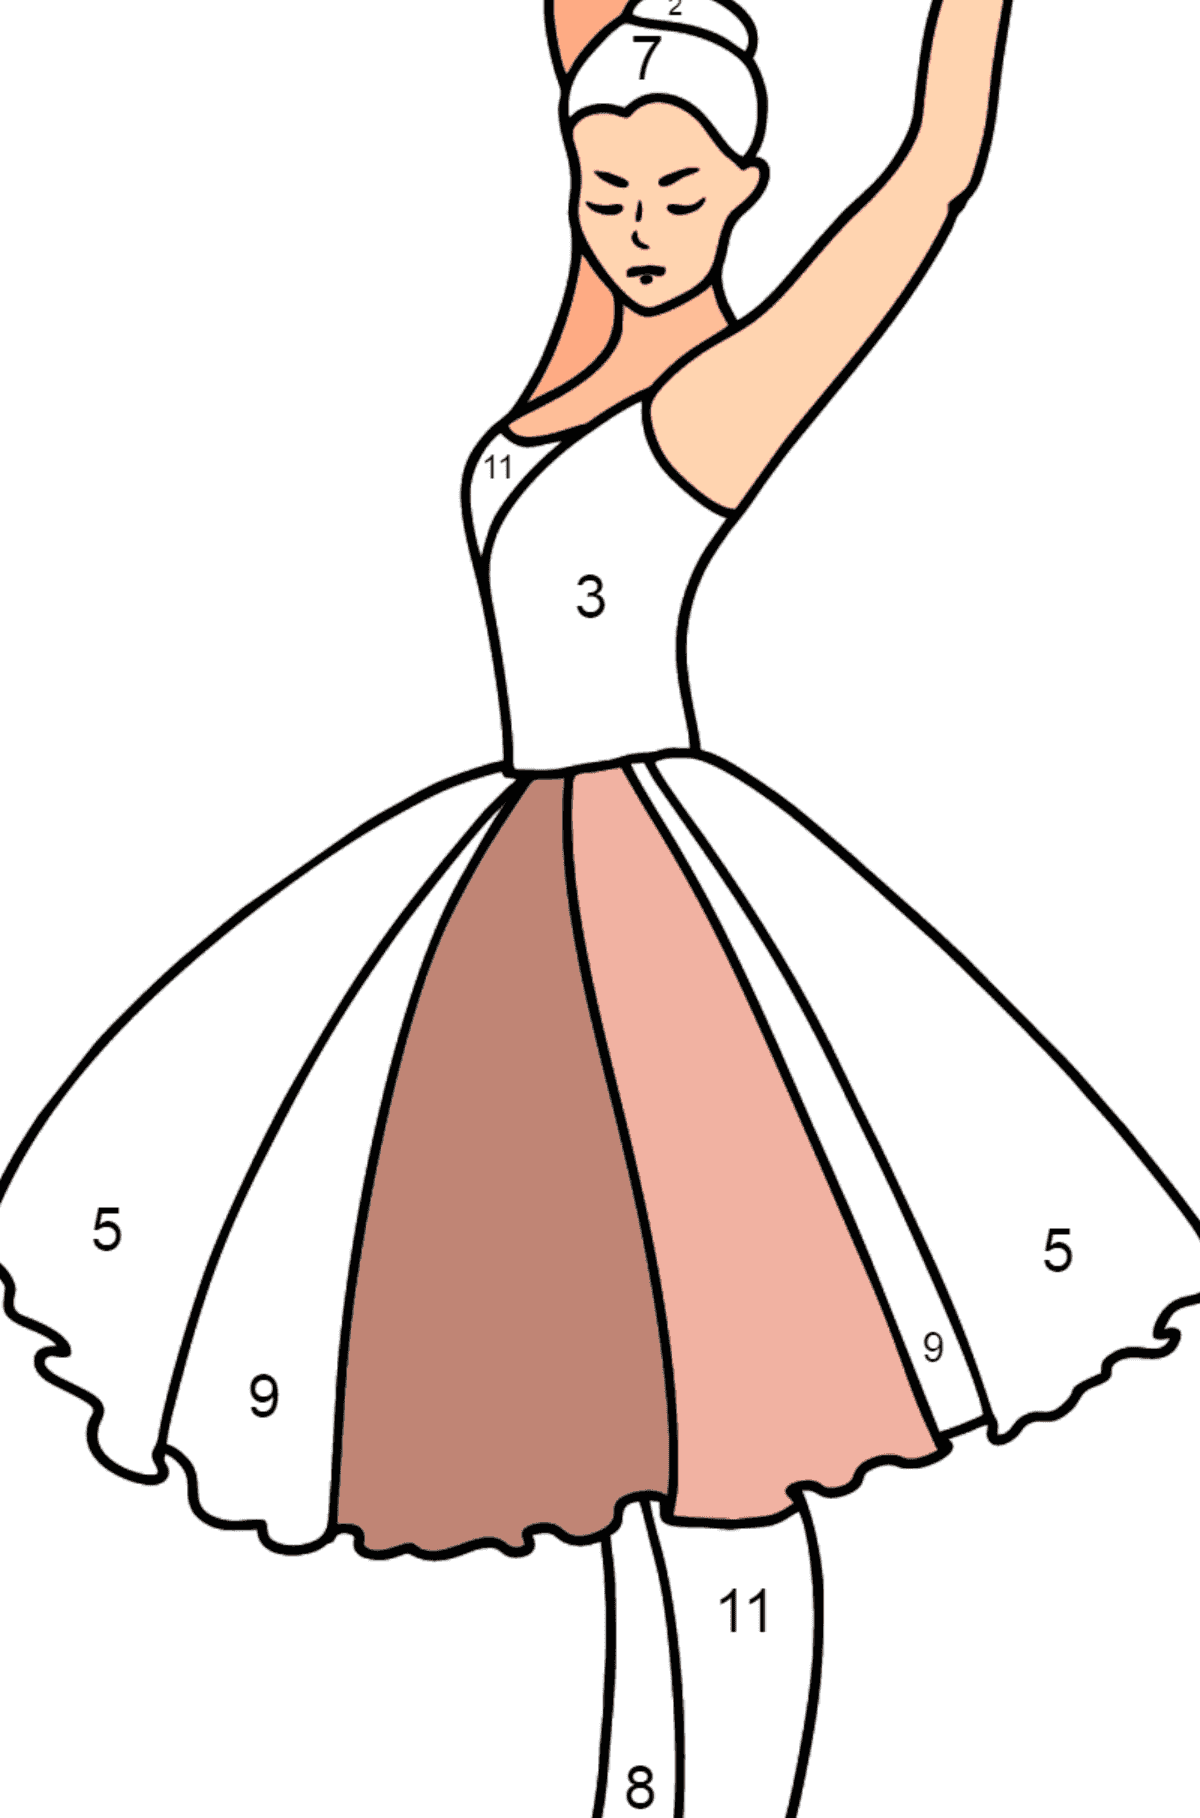 Dibujo para colorear - Bailarina bailando - Colorear por Números para Niños